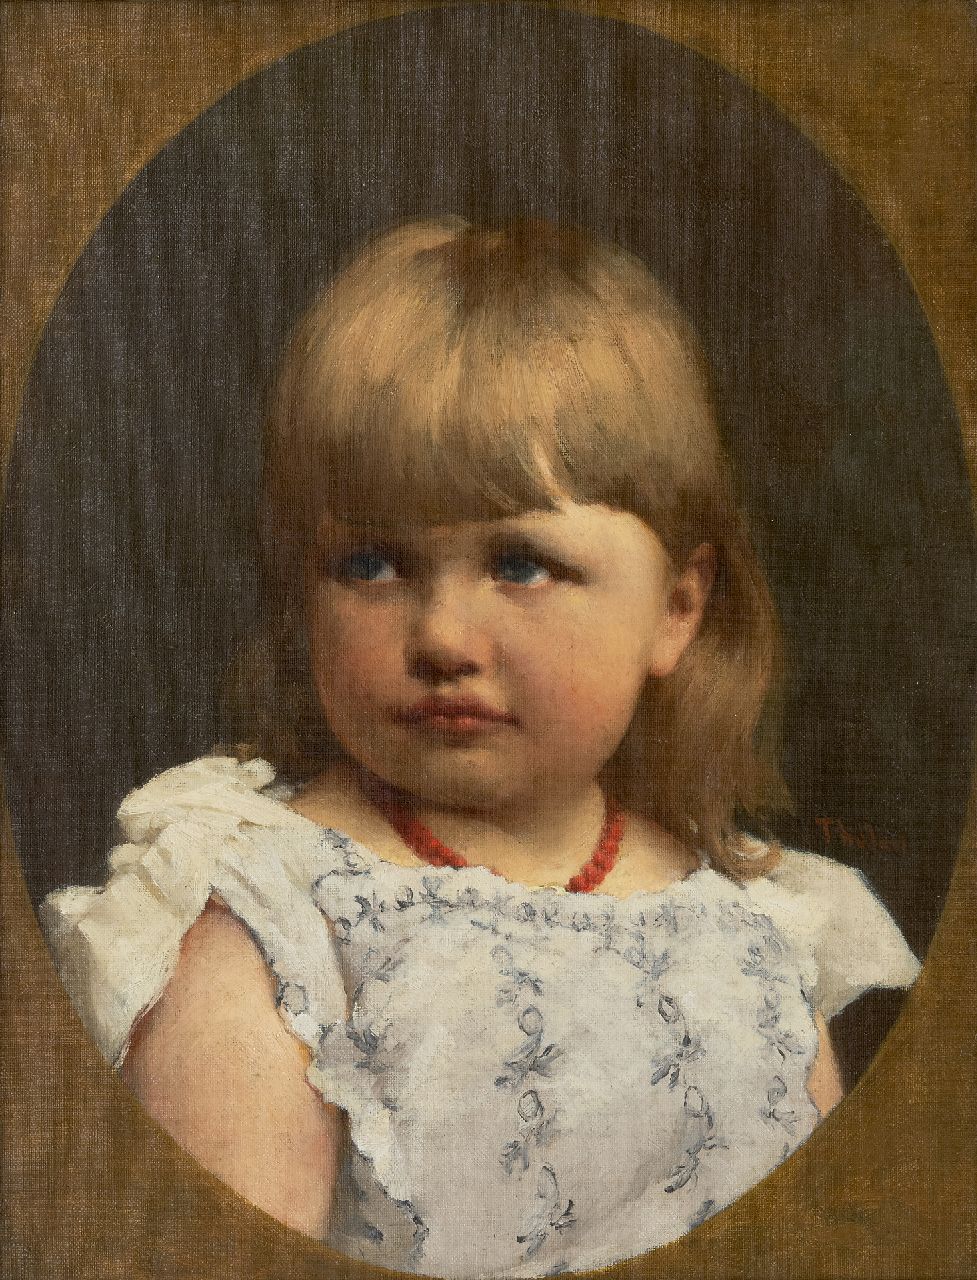 Tholen W.B.  | Willem Bastiaan Tholen | Schilderijen te koop aangeboden | Kinderportret, olieverf op doek 44,3 x 34,2 cm, gesigneerd rechts van het midden